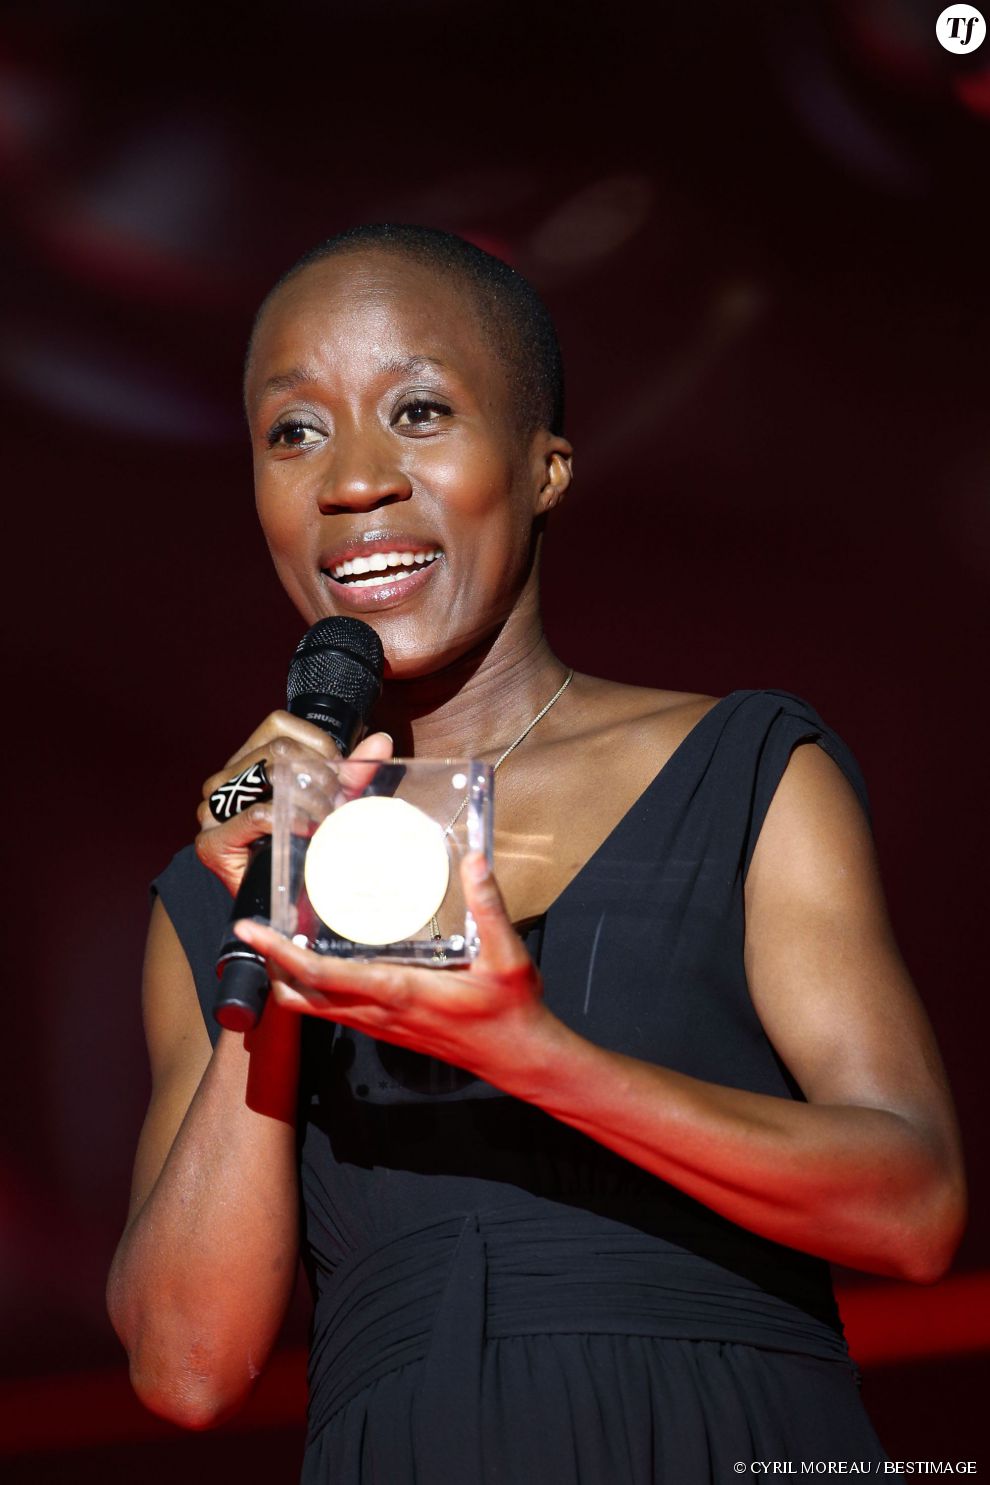 La chanteuse Rokia Traoré, membre du jury du 68ème festival de Cannes